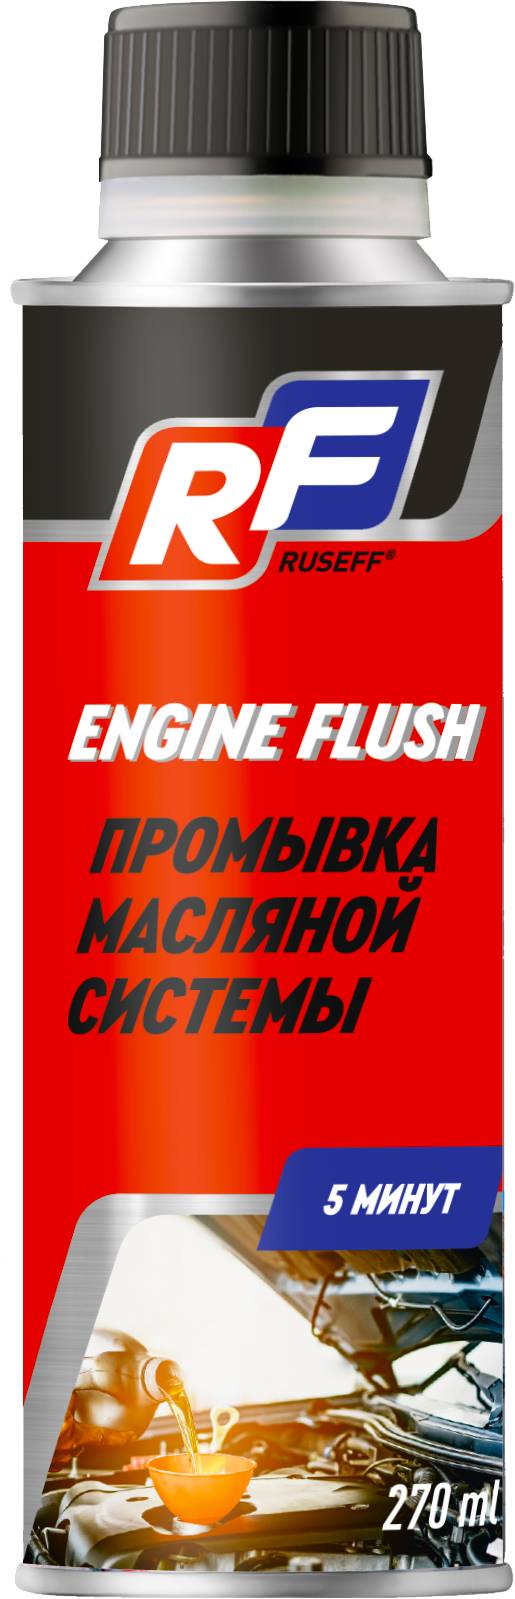 Присадки / Автохимия 19422N RUSEFF Промывка масляной системы двигателя 5 мин (275 мл)